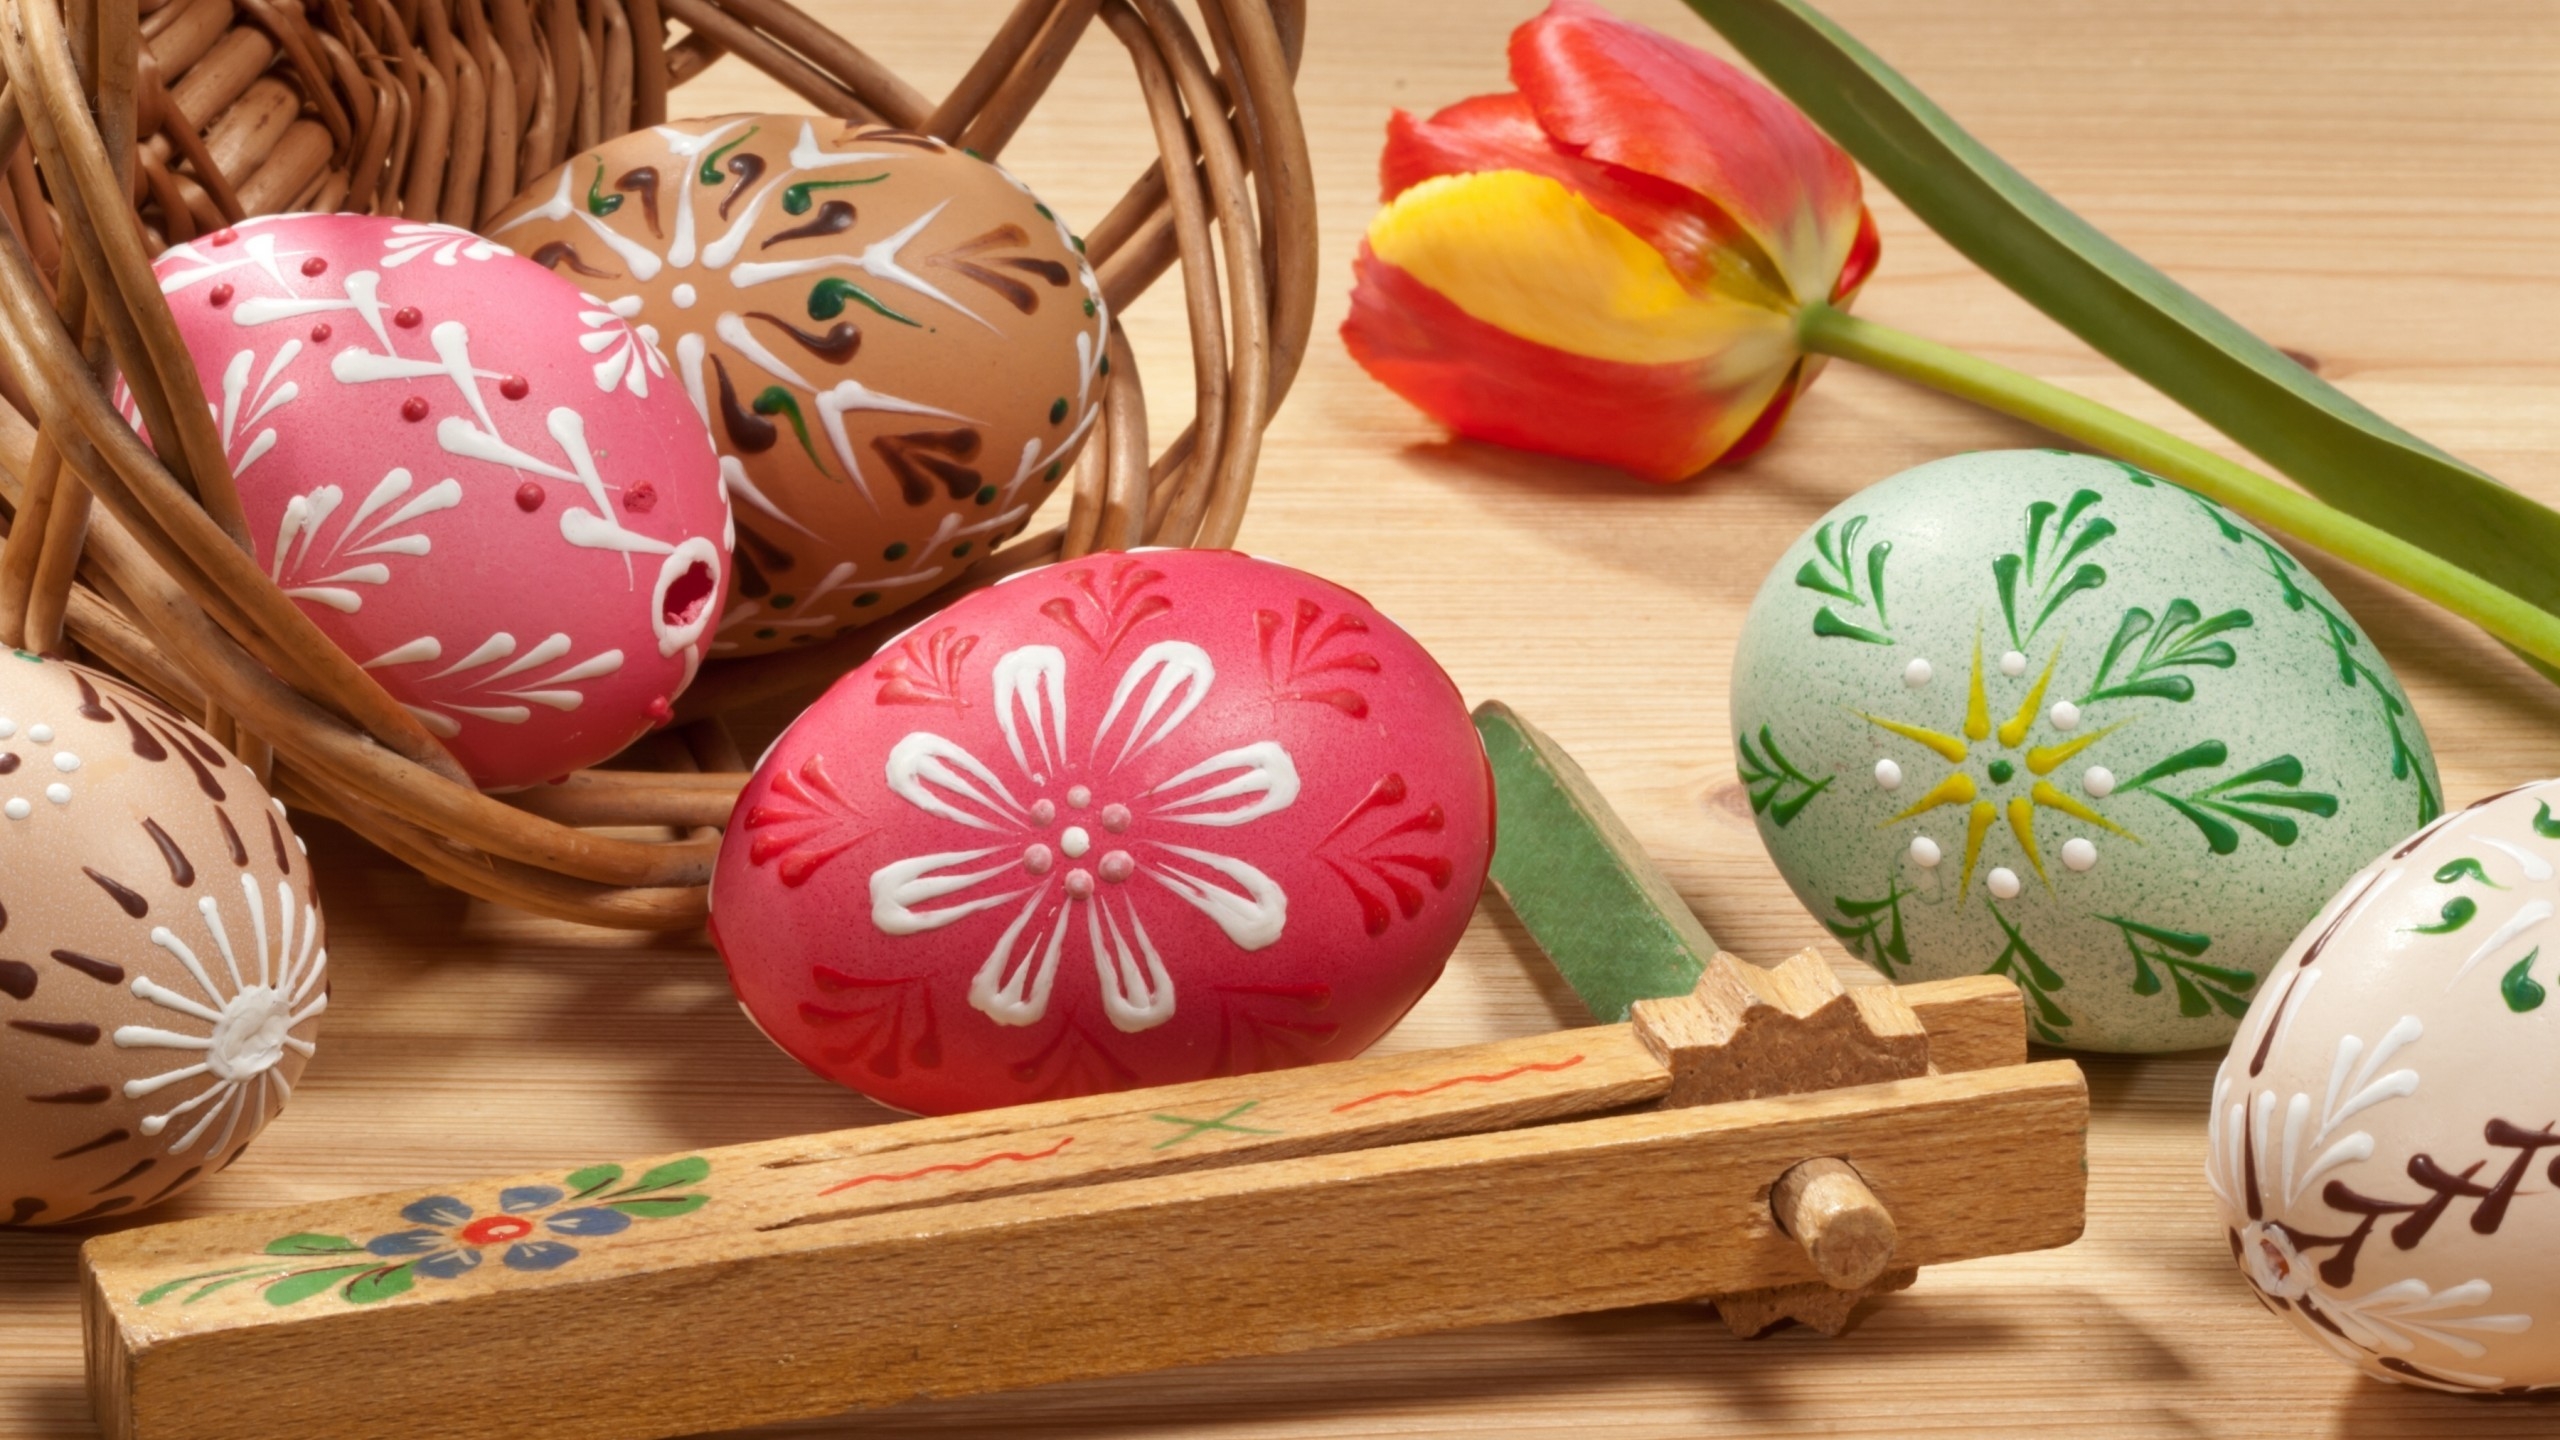 Lovely Painted Easter Eggs for 2560x1440 HDTV resolution